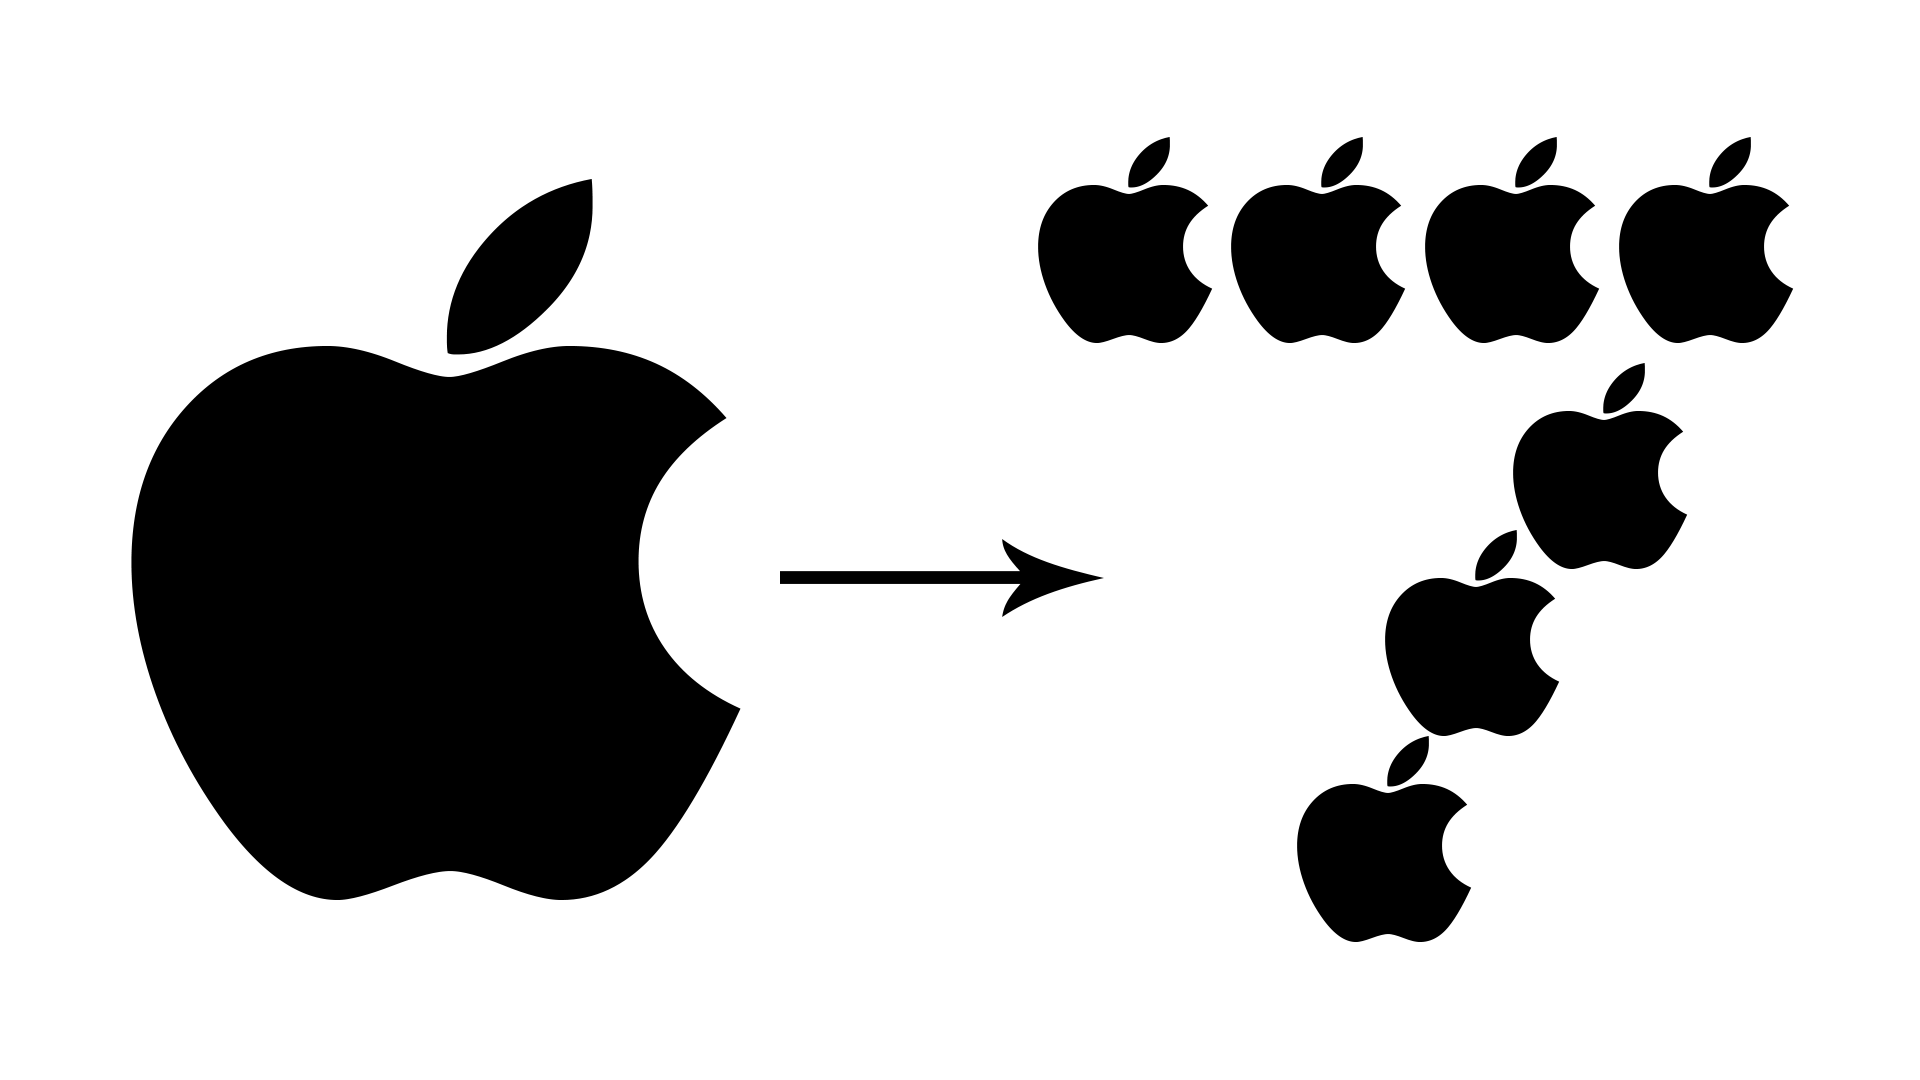 Apple-7-for-one-Stock-Split